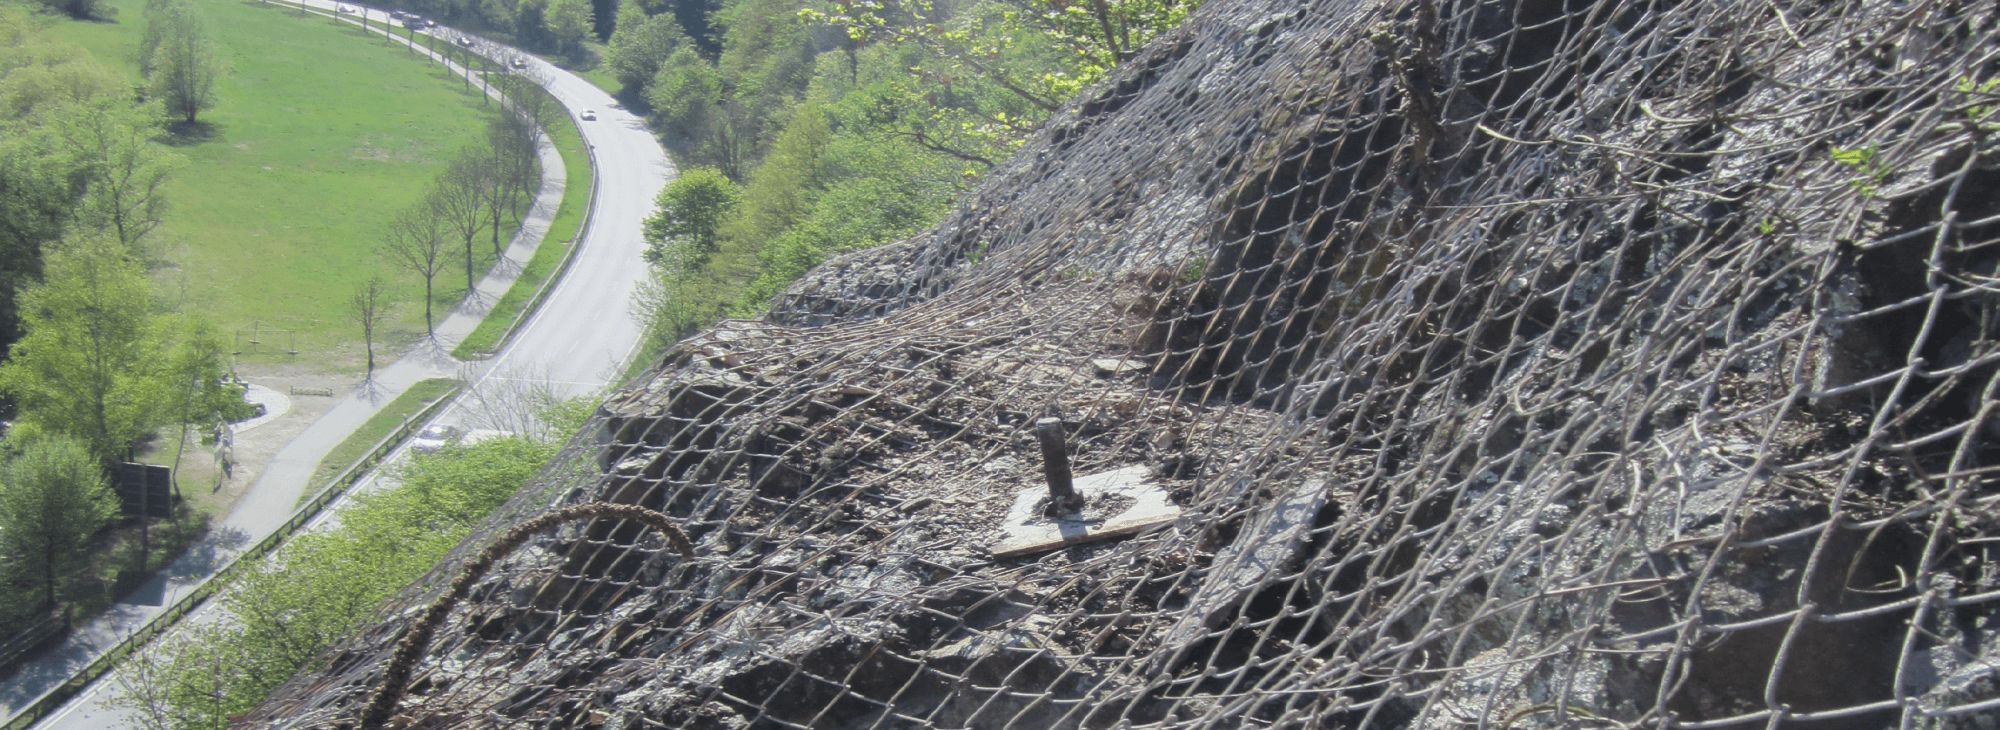 Steinschlag im alpinen Gelände ein hohes Risiko - KFV - Kuratorium